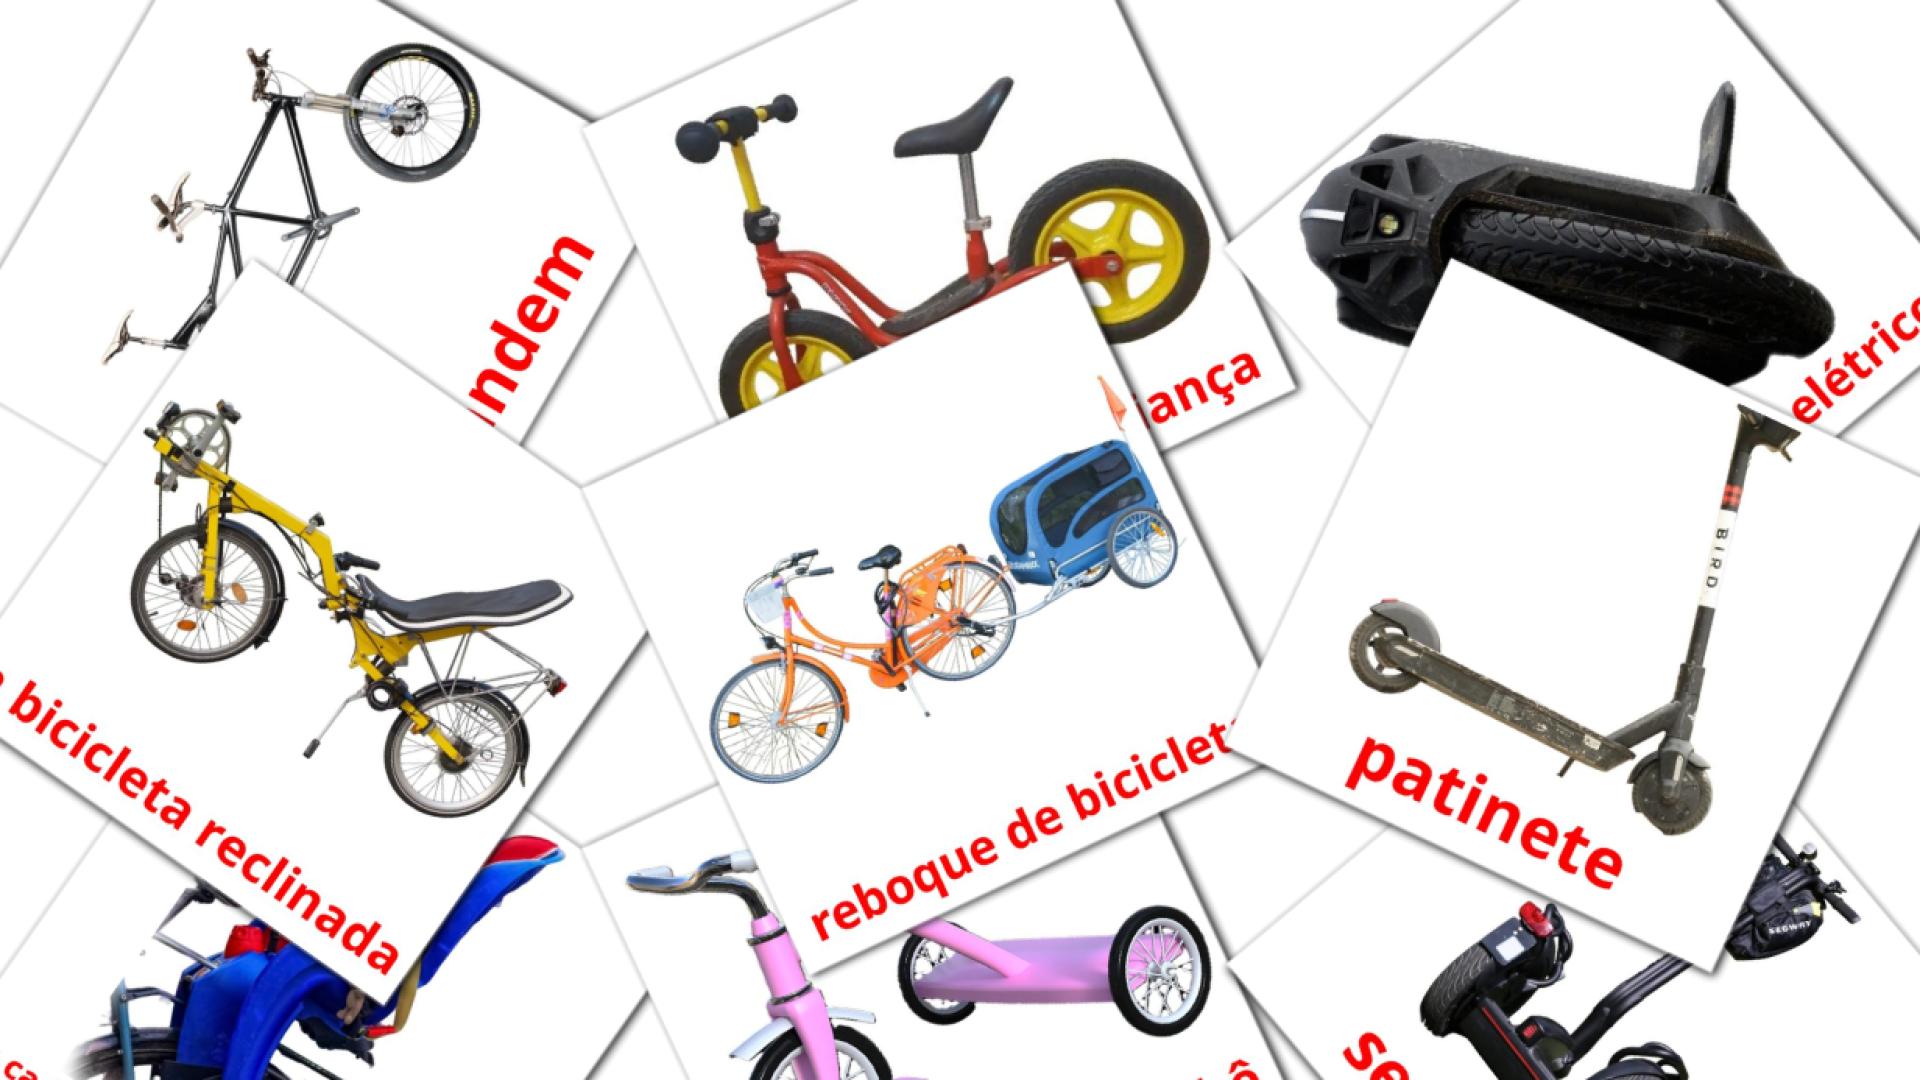 16 Imagiers Transporte de Bicicleta